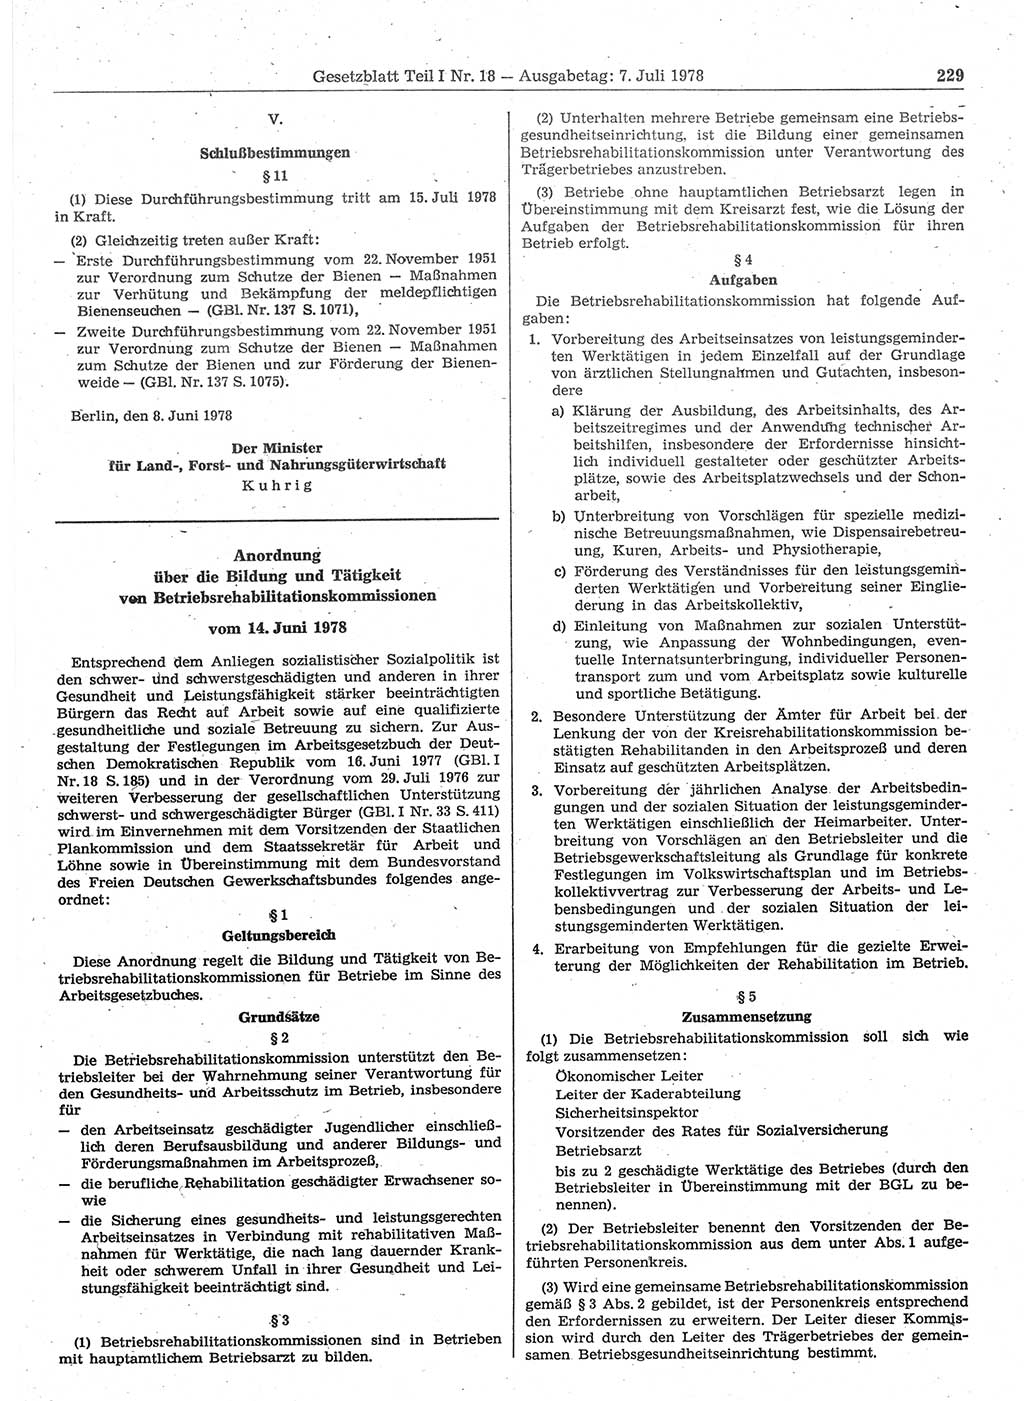 Gesetzblatt (GBl.) der Deutschen Demokratischen Republik (DDR) Teil Ⅰ 1978, Seite 229 (GBl. DDR Ⅰ 1978, S. 229)